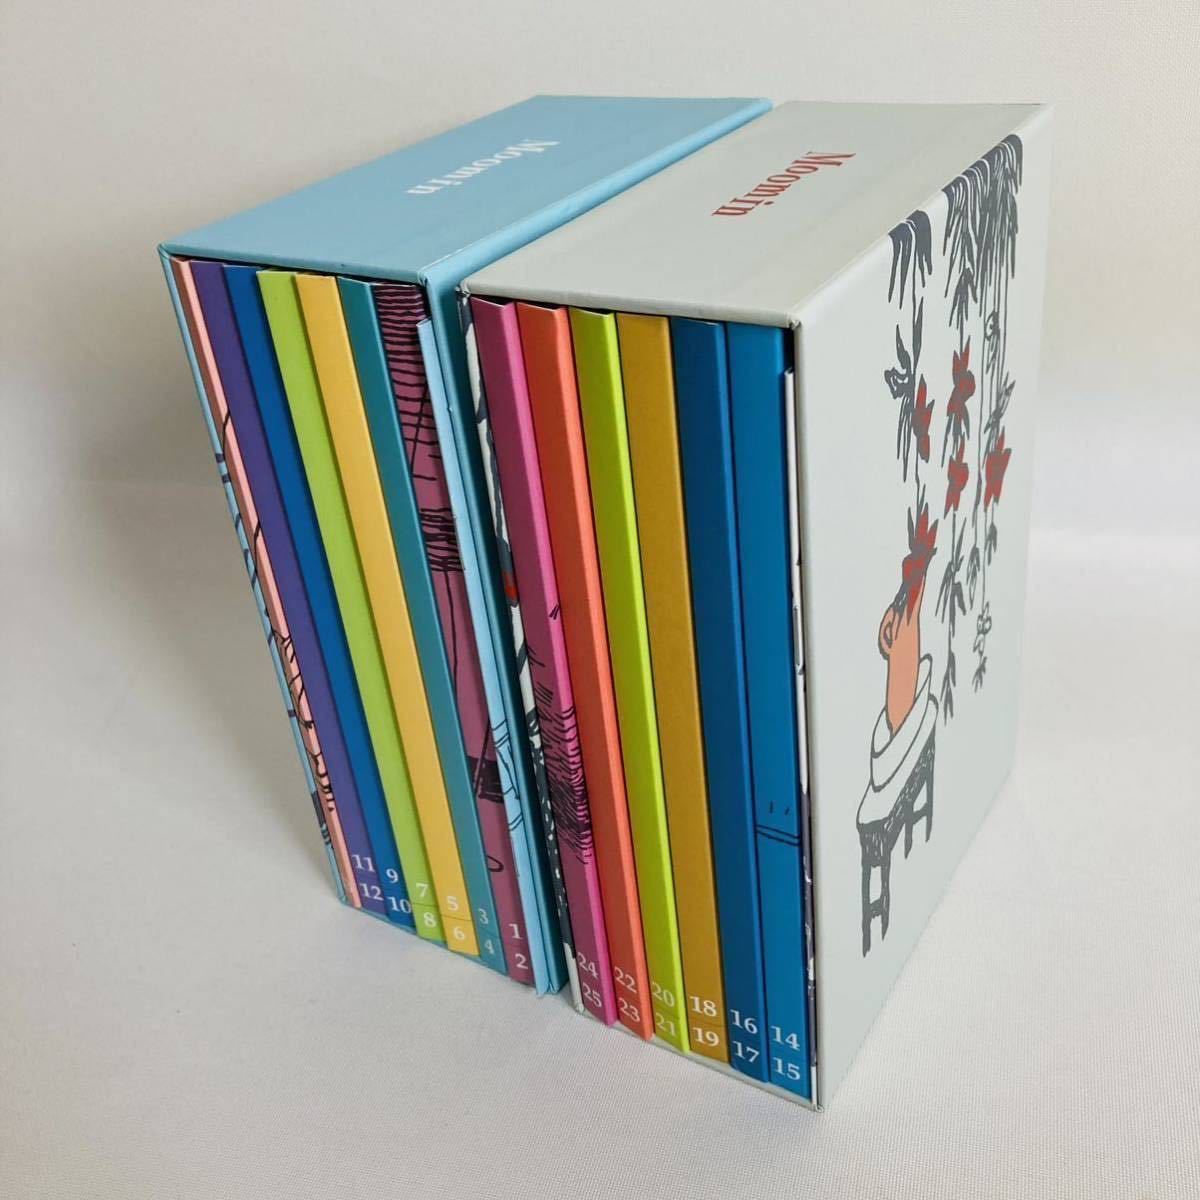  бесплатная доставка * веселый Moomin один дом DVD 25 листов комплект аниме Kids Moomin snaf gold mii сверху шт внизу шт комплект весь все рассказ стандартный товар Complete 